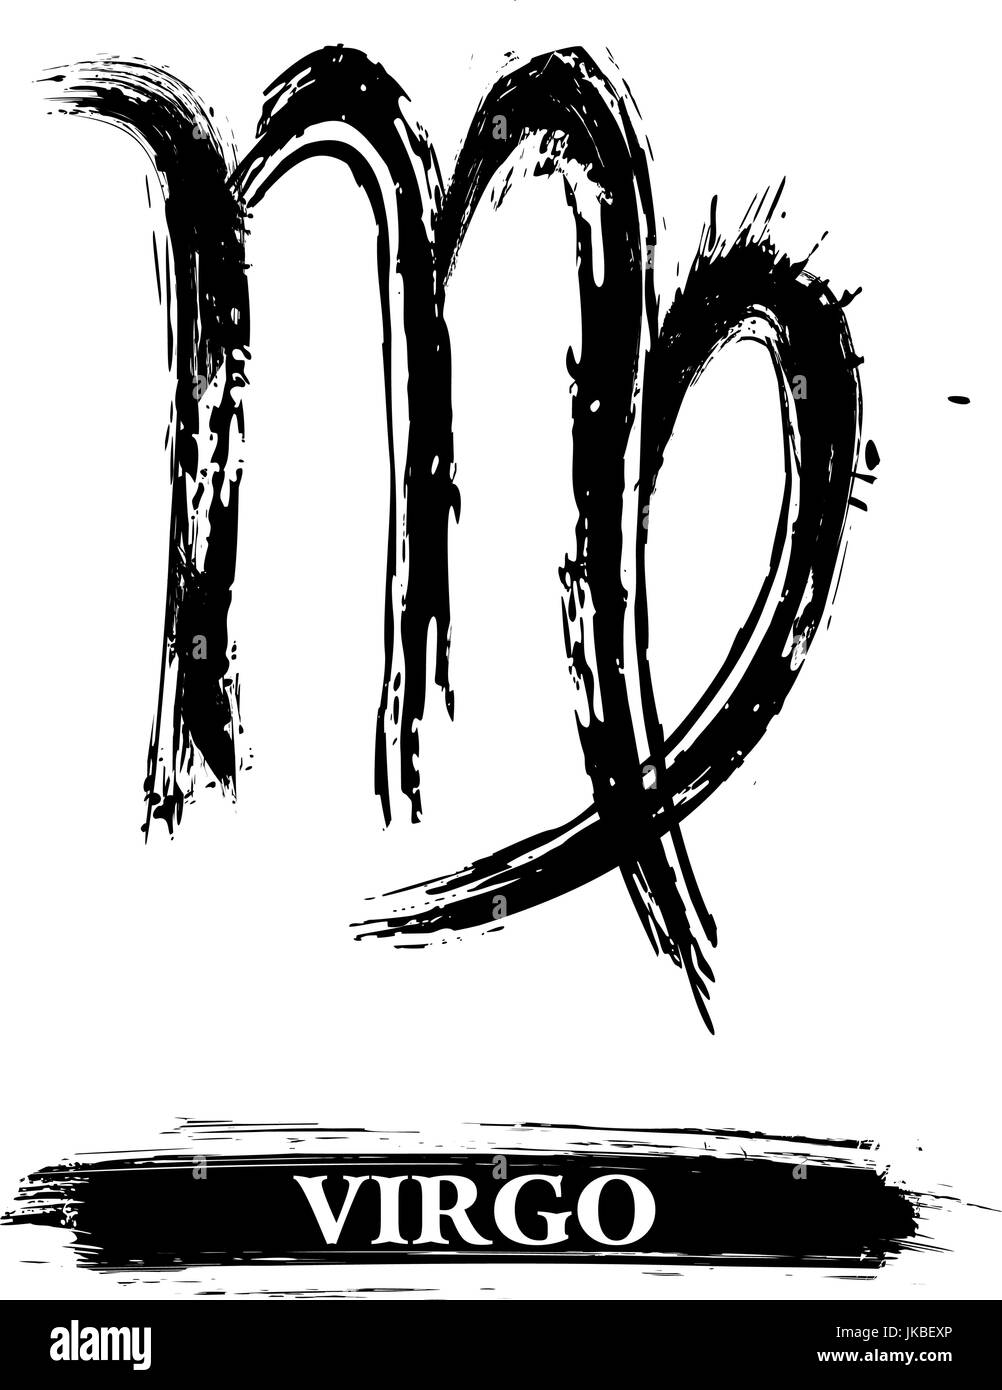 17 Virgo-Inspired Tattoos | CafeMom.com